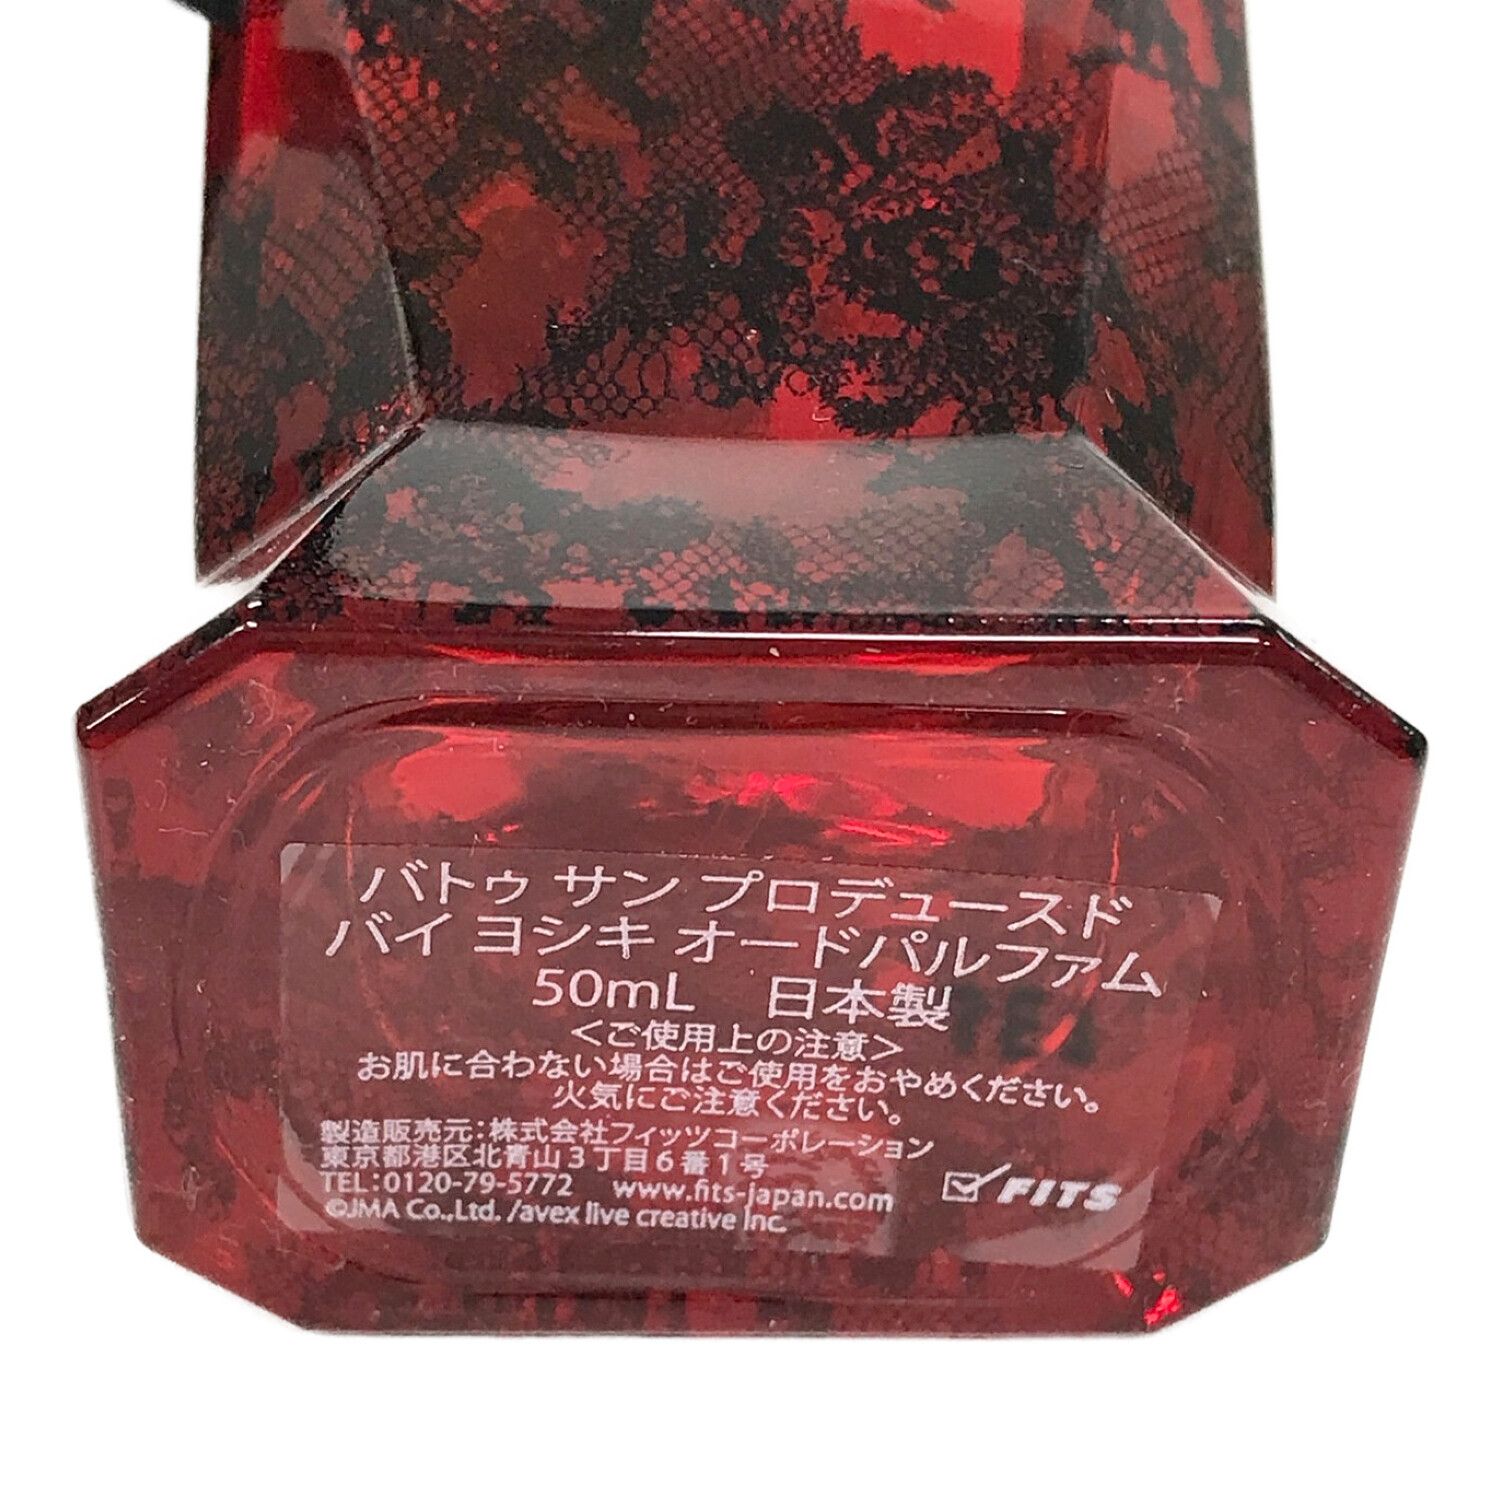 Battre Sang (バトゥ サン) 香水 プロデュースドバイ ヨシキ オードパルファム 50ml